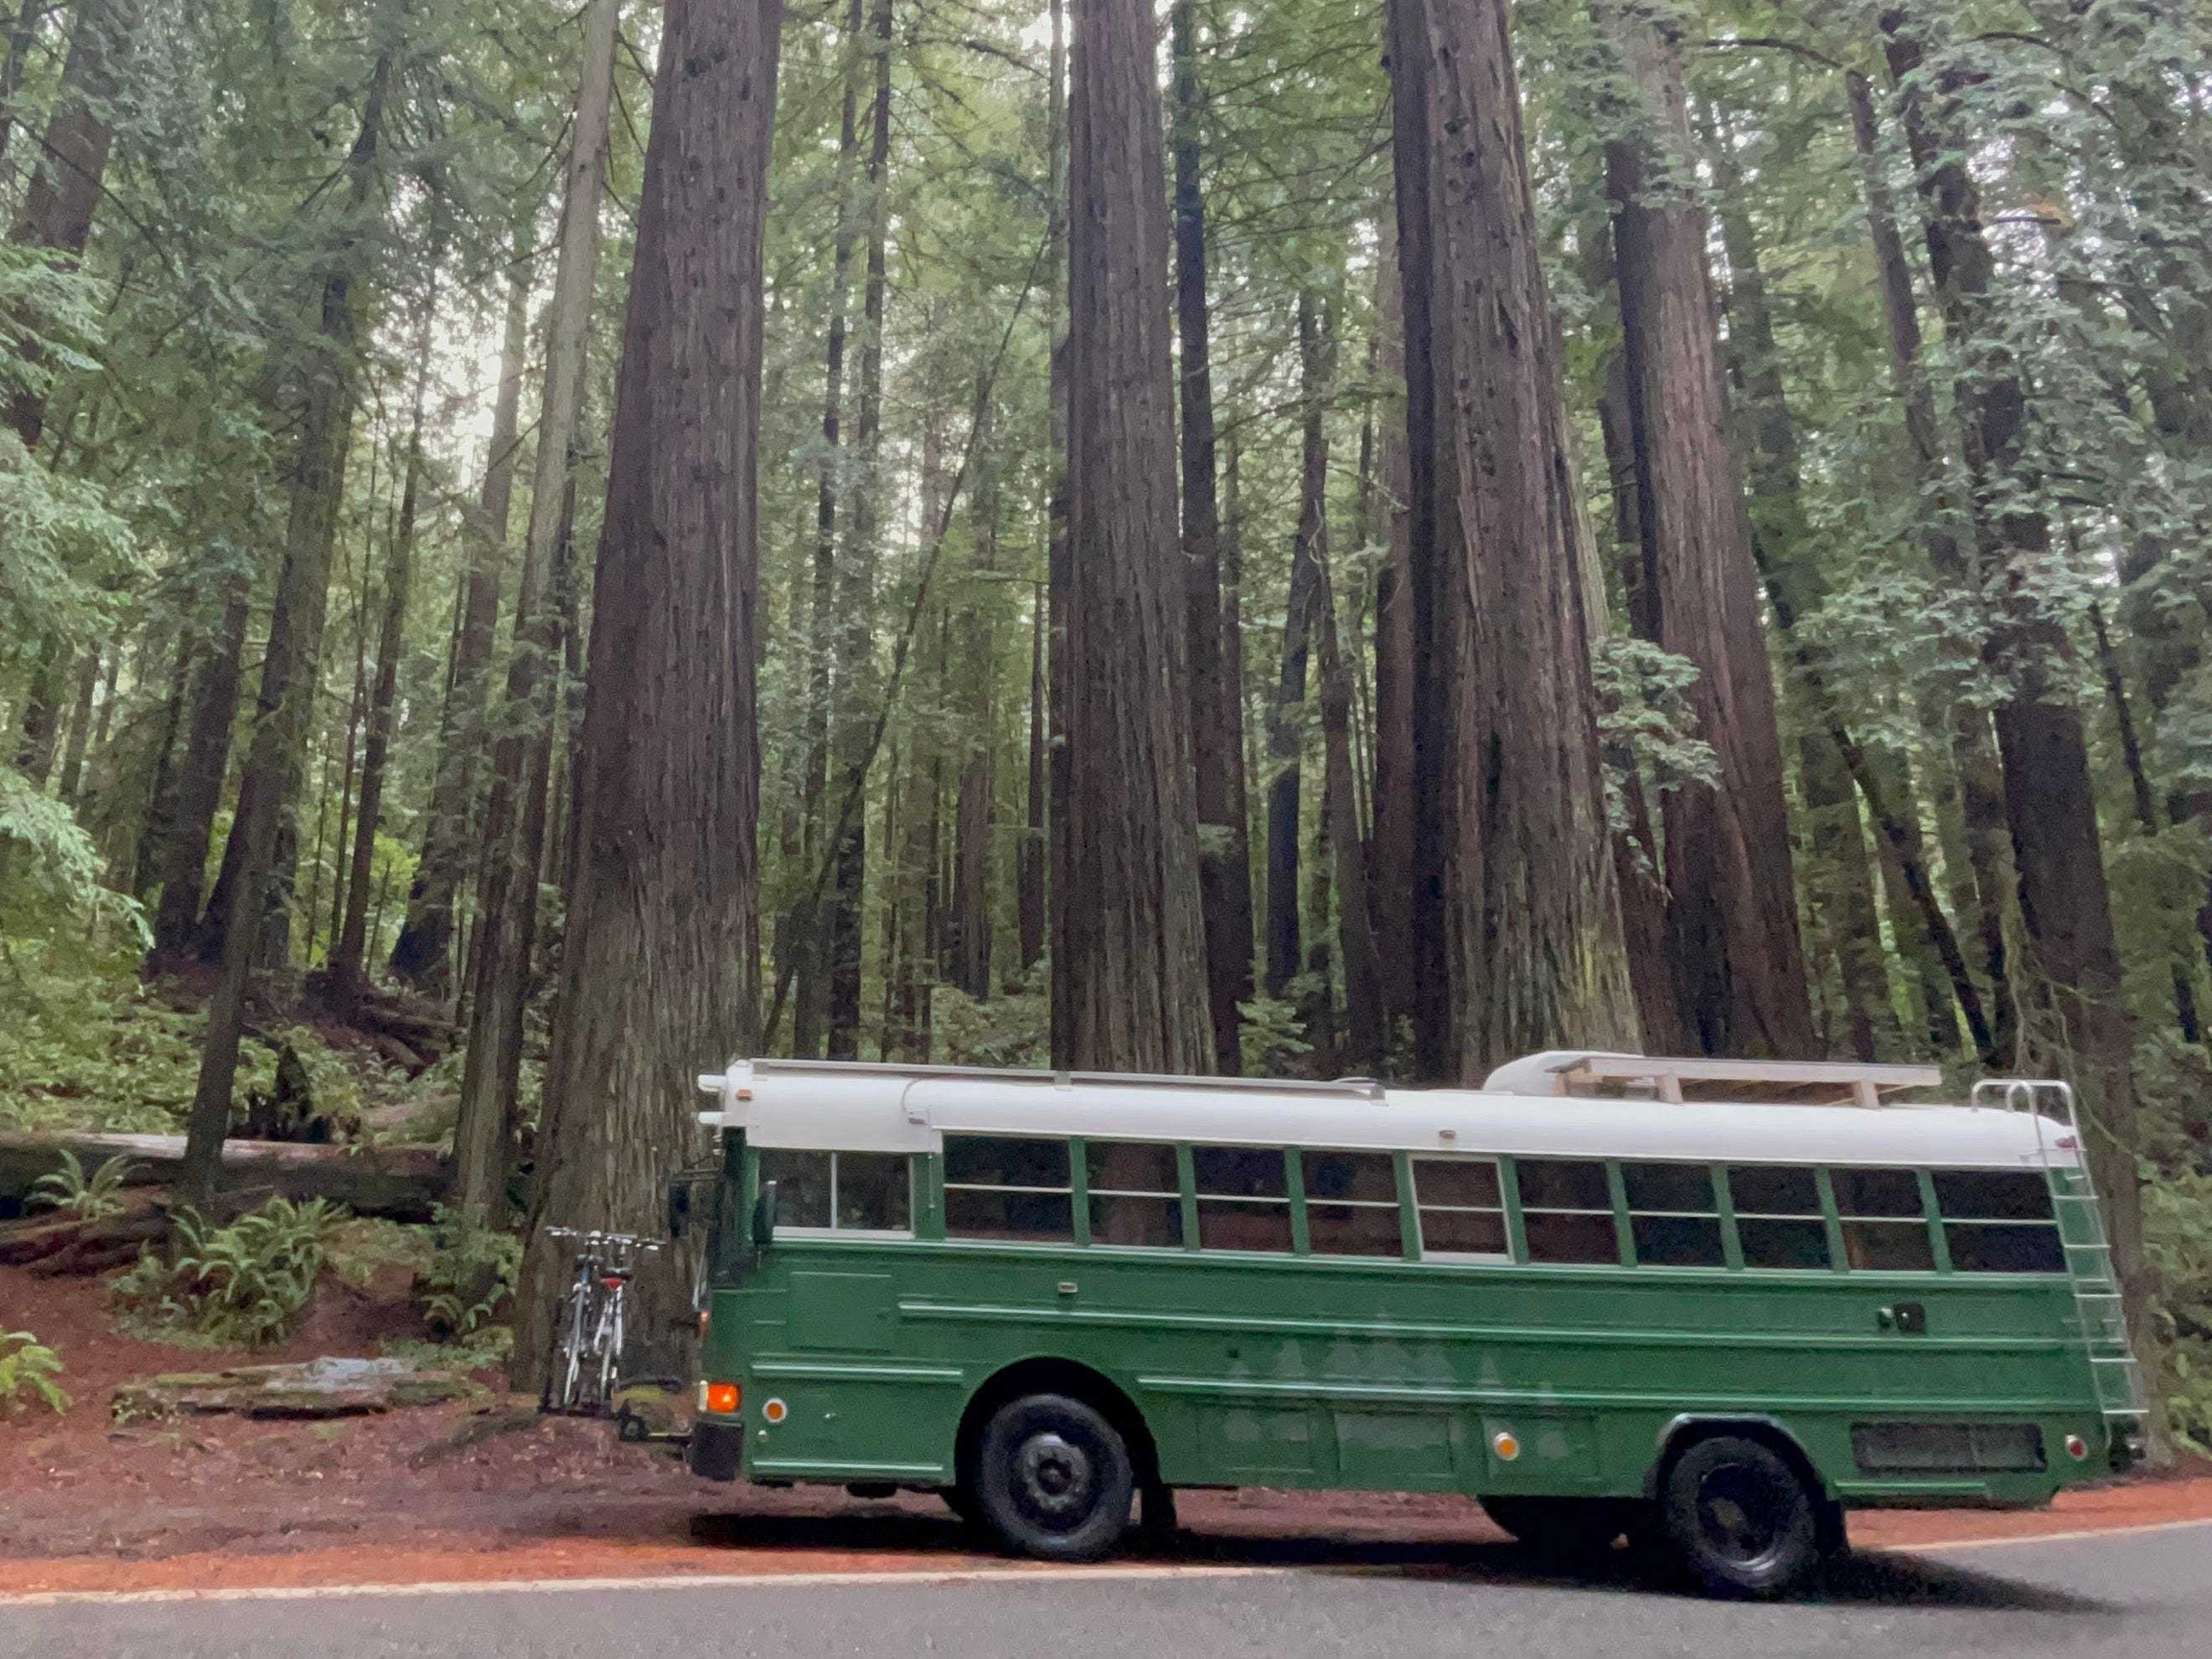 Grüner Schulbus neben riesigen Redwood-Bäumen im Wald